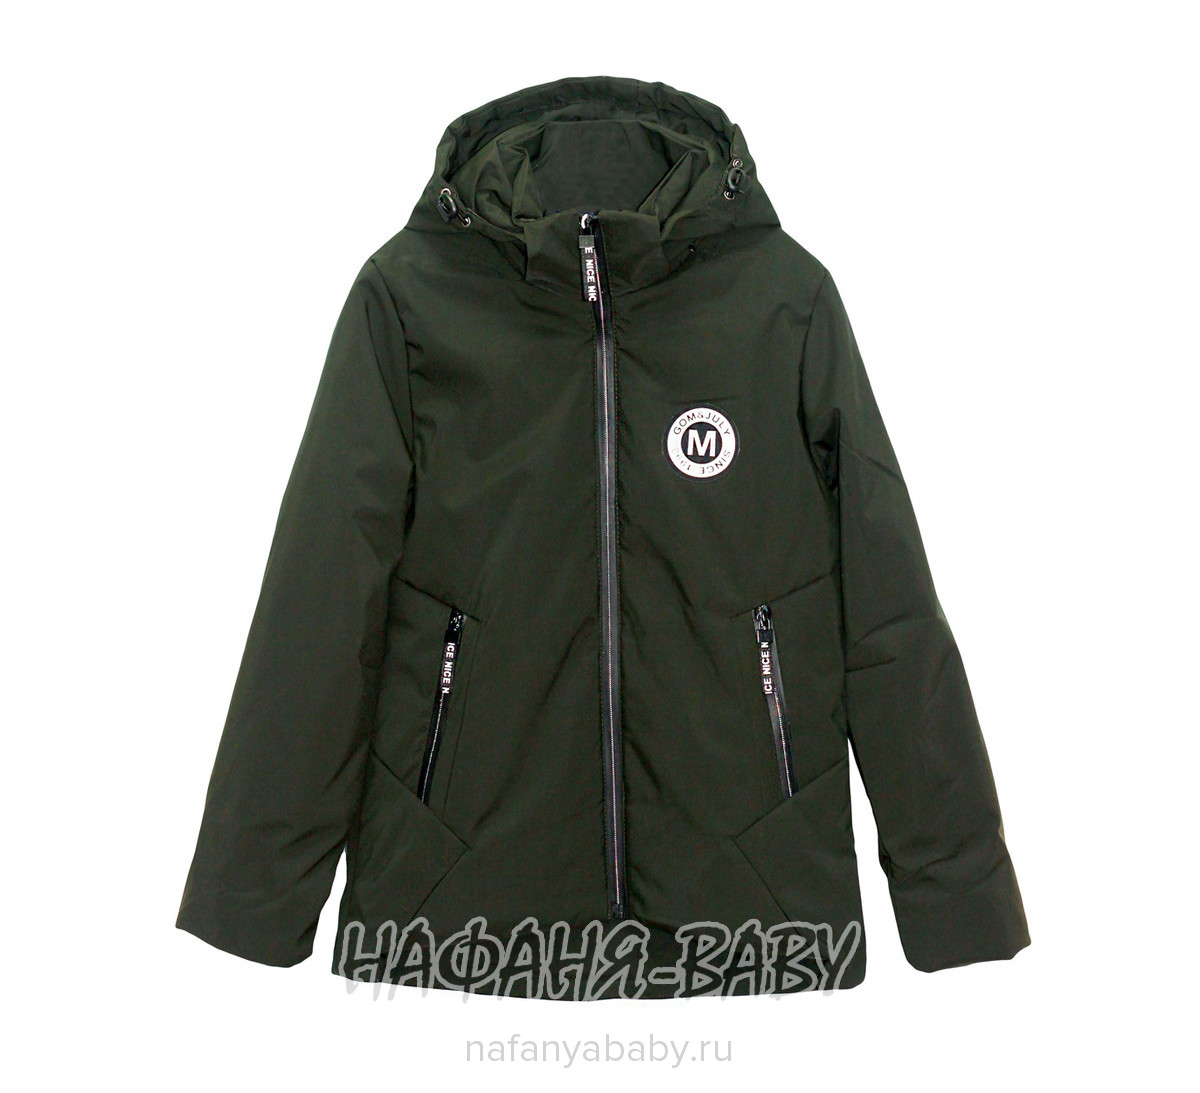 Детская демисезонная куртка DELFIN-FREE, купить в интернет магазине Нафаня. арт: 1804.